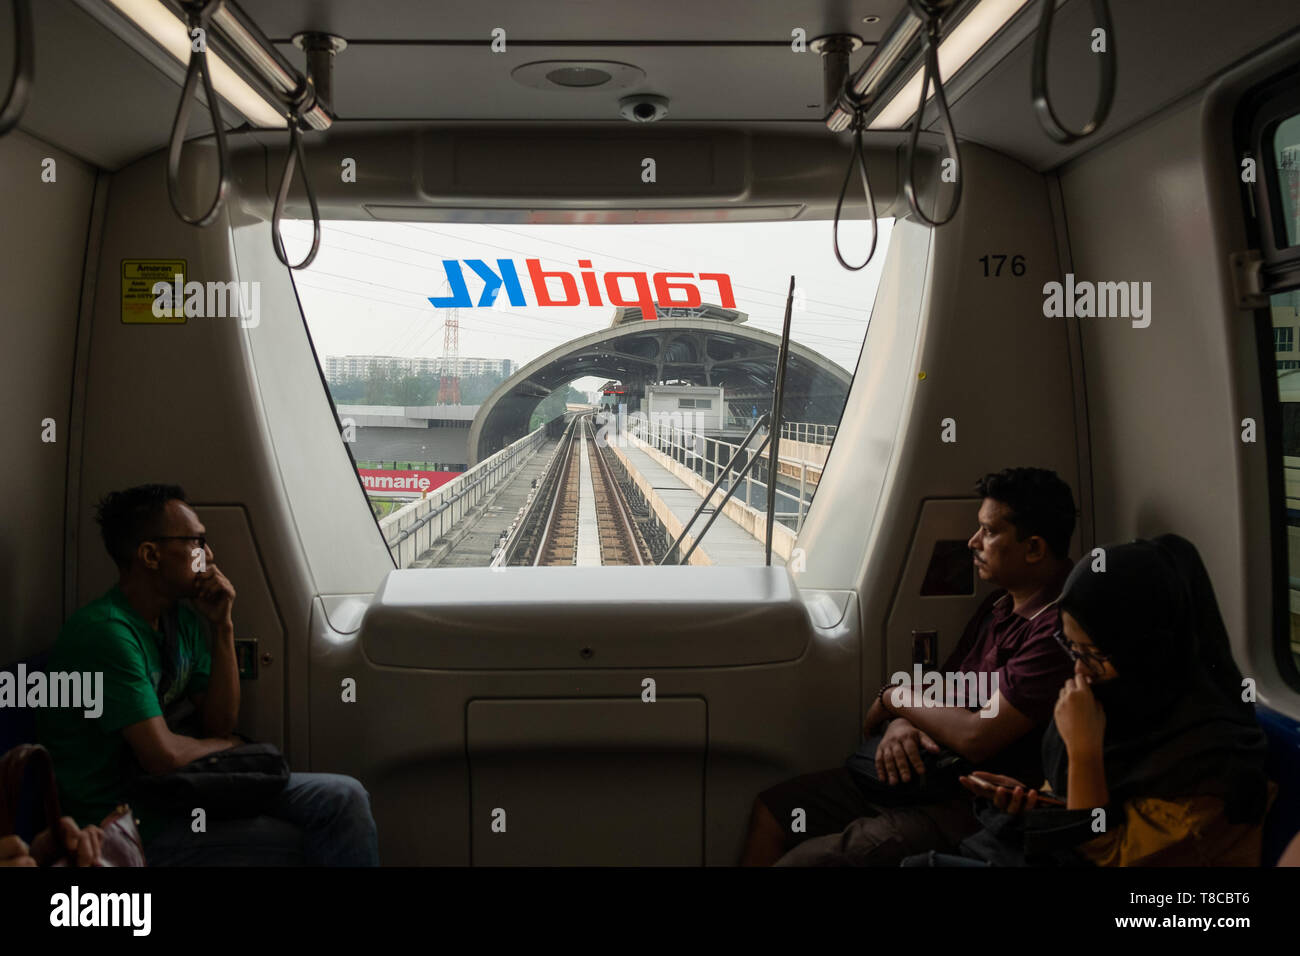 Passagiere auf der Suche durch das Fenster der fahrerlosen Nahverkehrszug in Rrailway station Antriebe, Hochbahn und Station, Kuala Lumpur, Malaysia Stockfoto